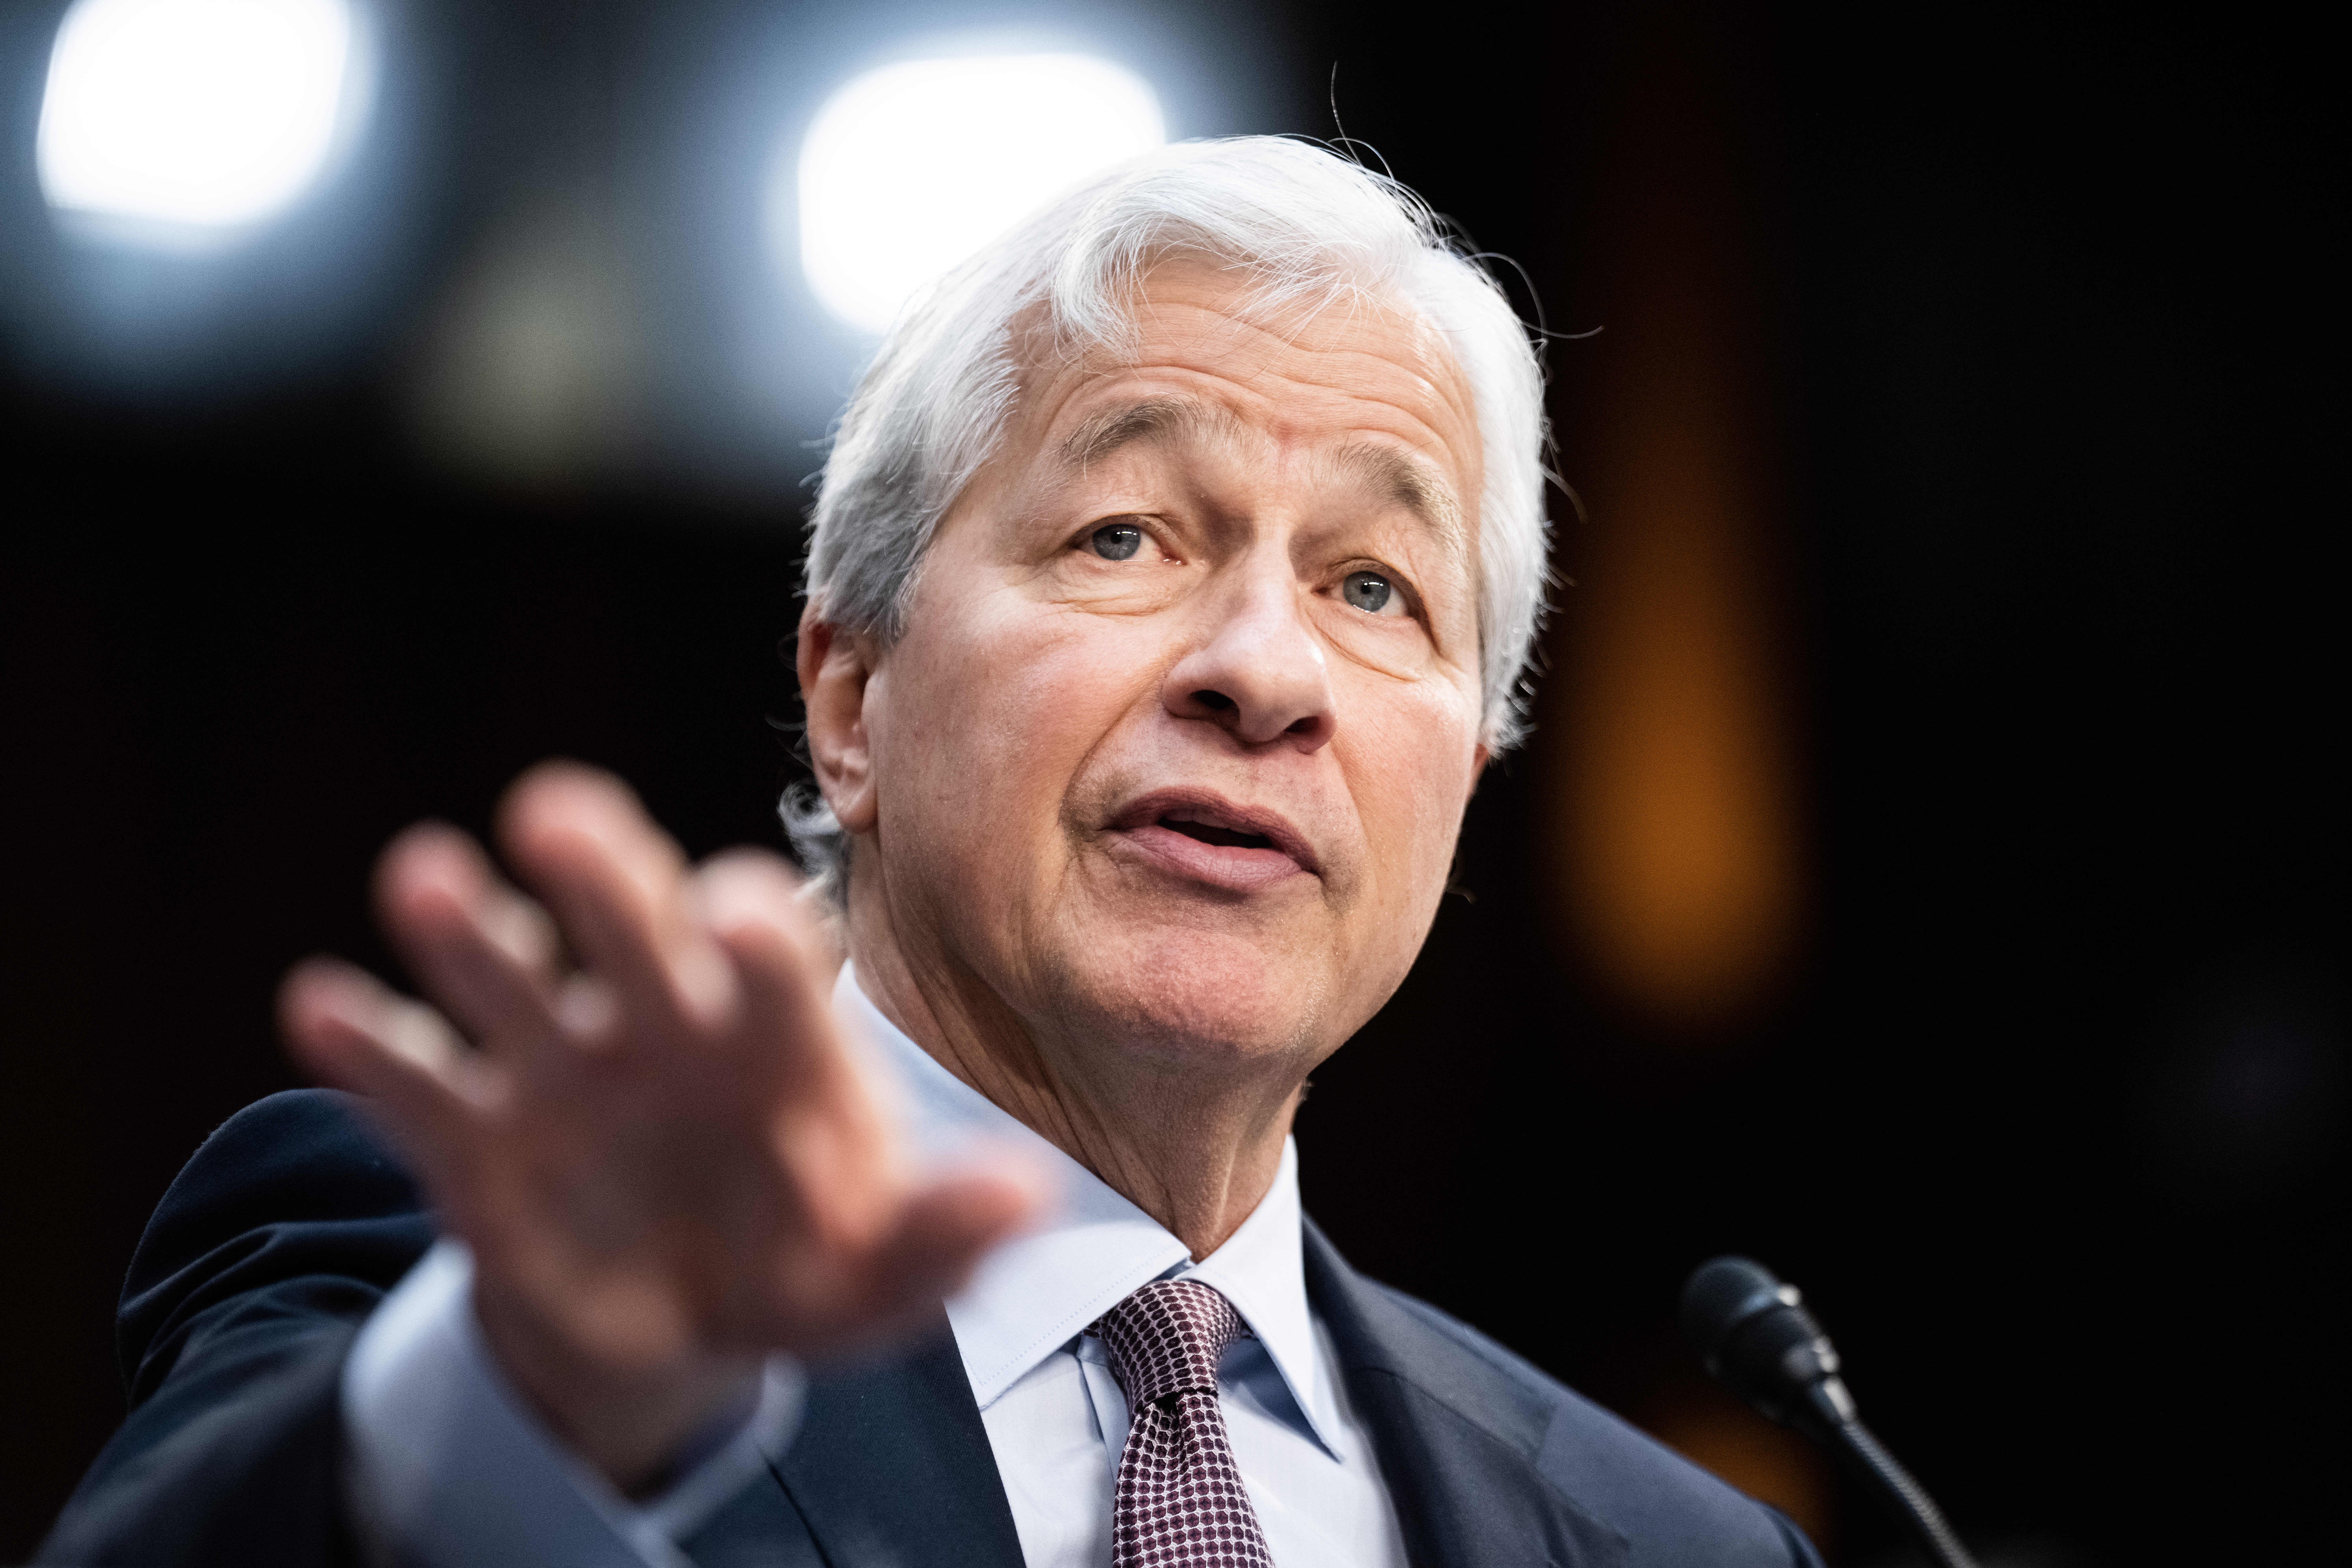 Jamie Dimon's retirement talk puts new spotlight on key JPMorgan deputies